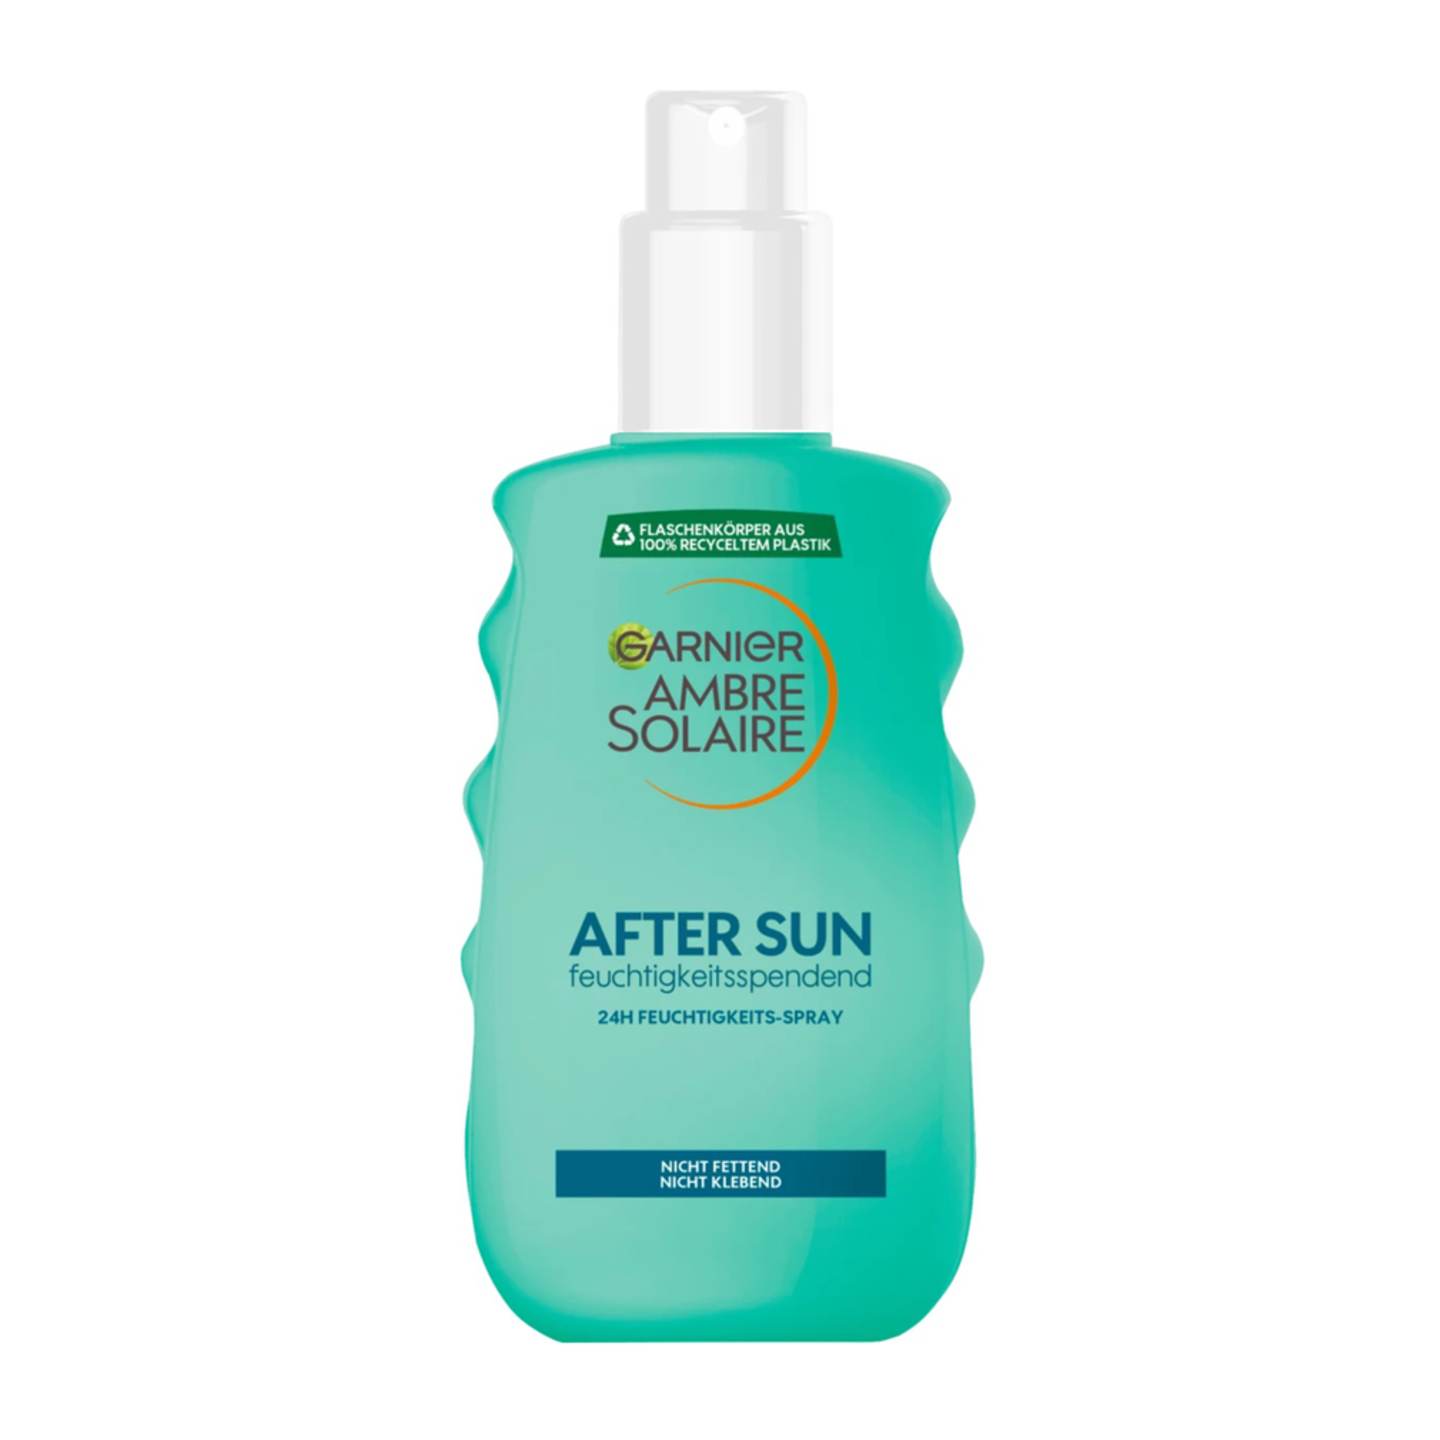 Ein Produktfoto der After Sun von Garnier.